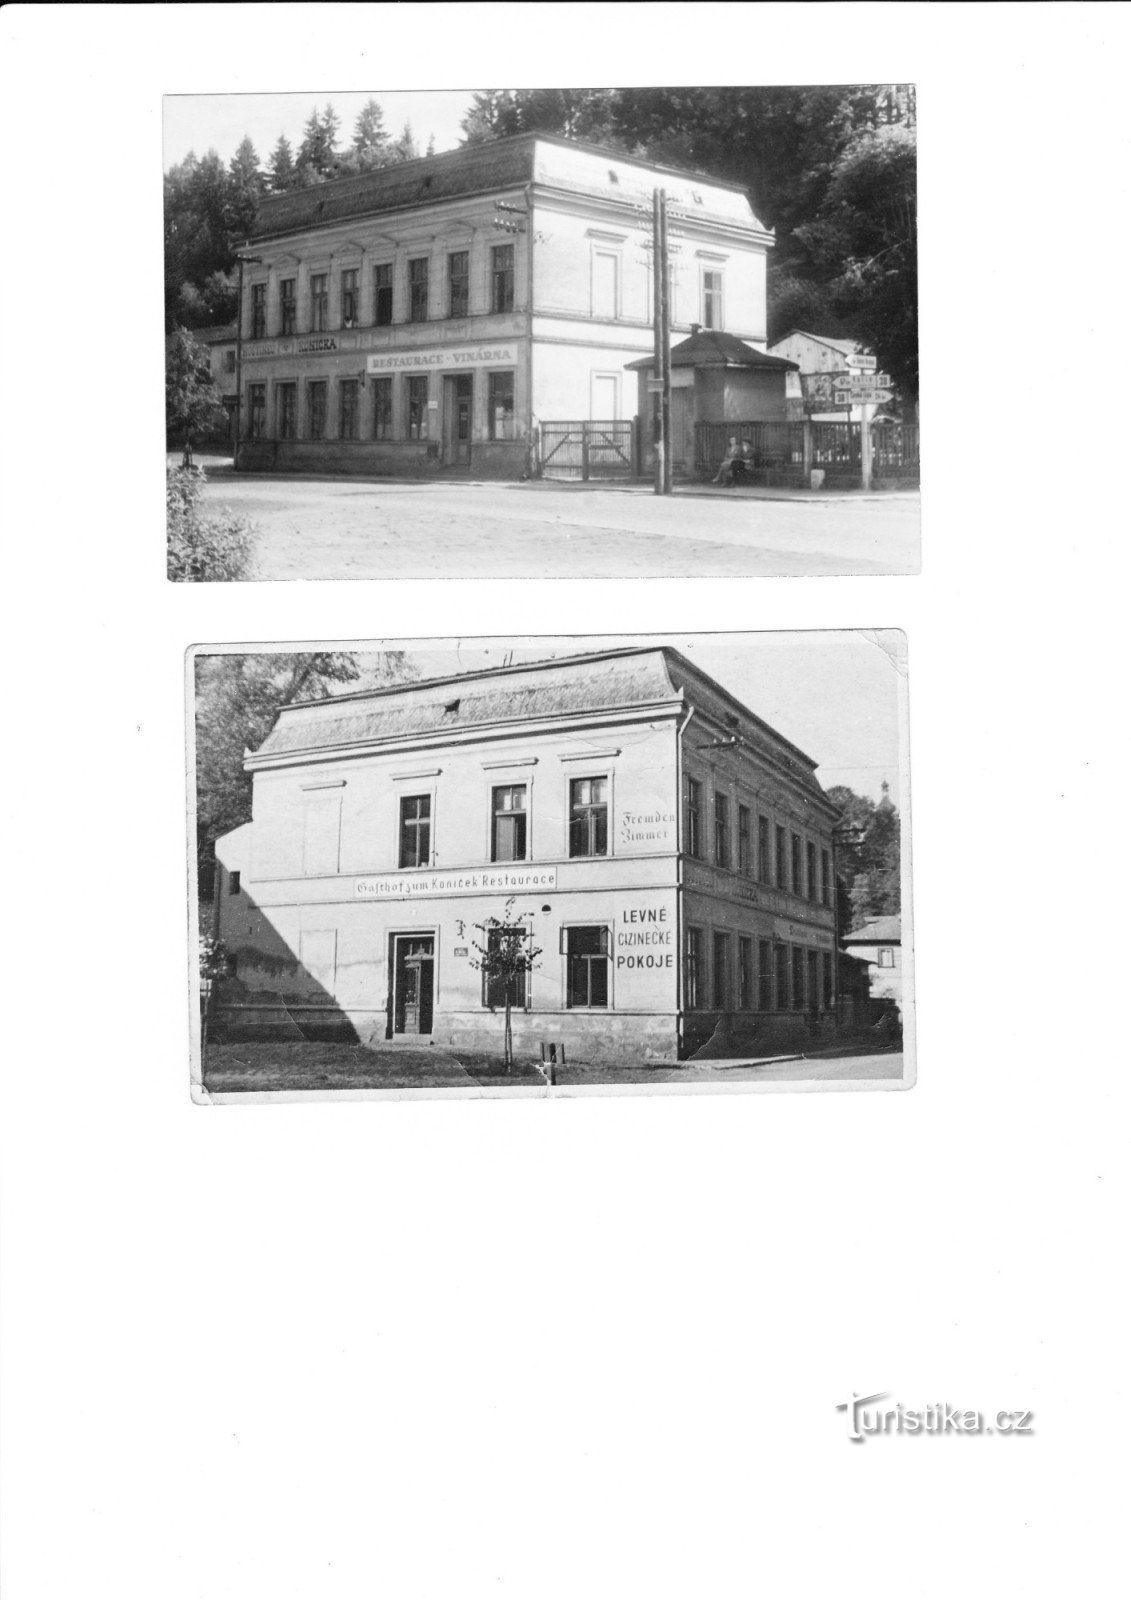 az eredeti Koníček szálloda - Šenekl úr nagyapjának tulajdona